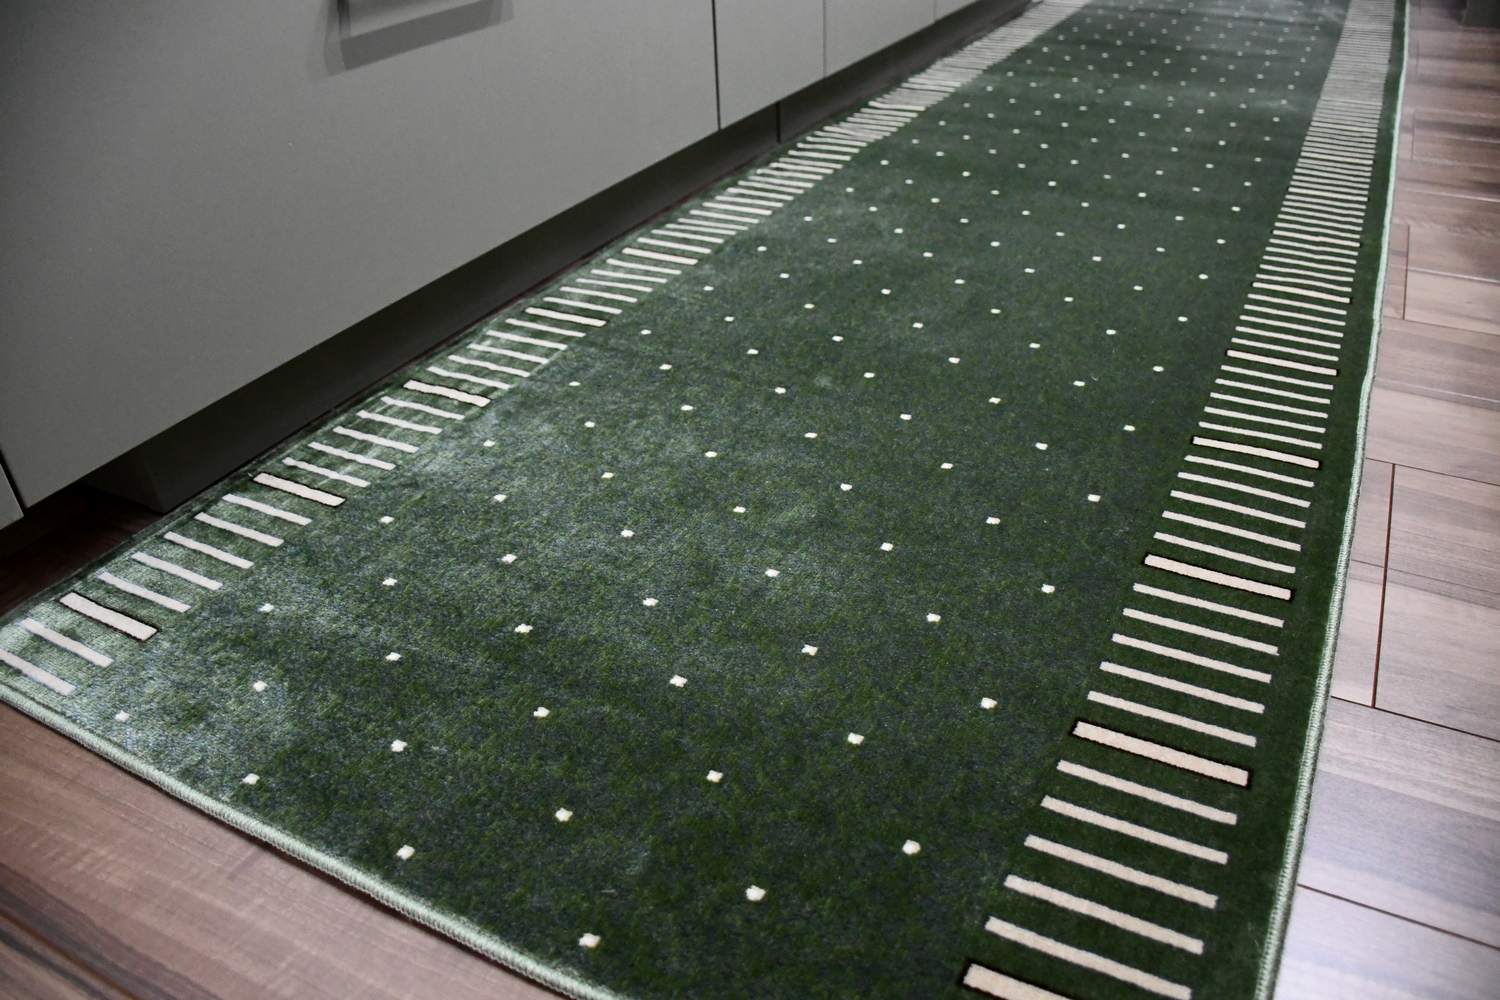 日本製 ロングカーペット ロングマット キッチンマット 廊下敷き